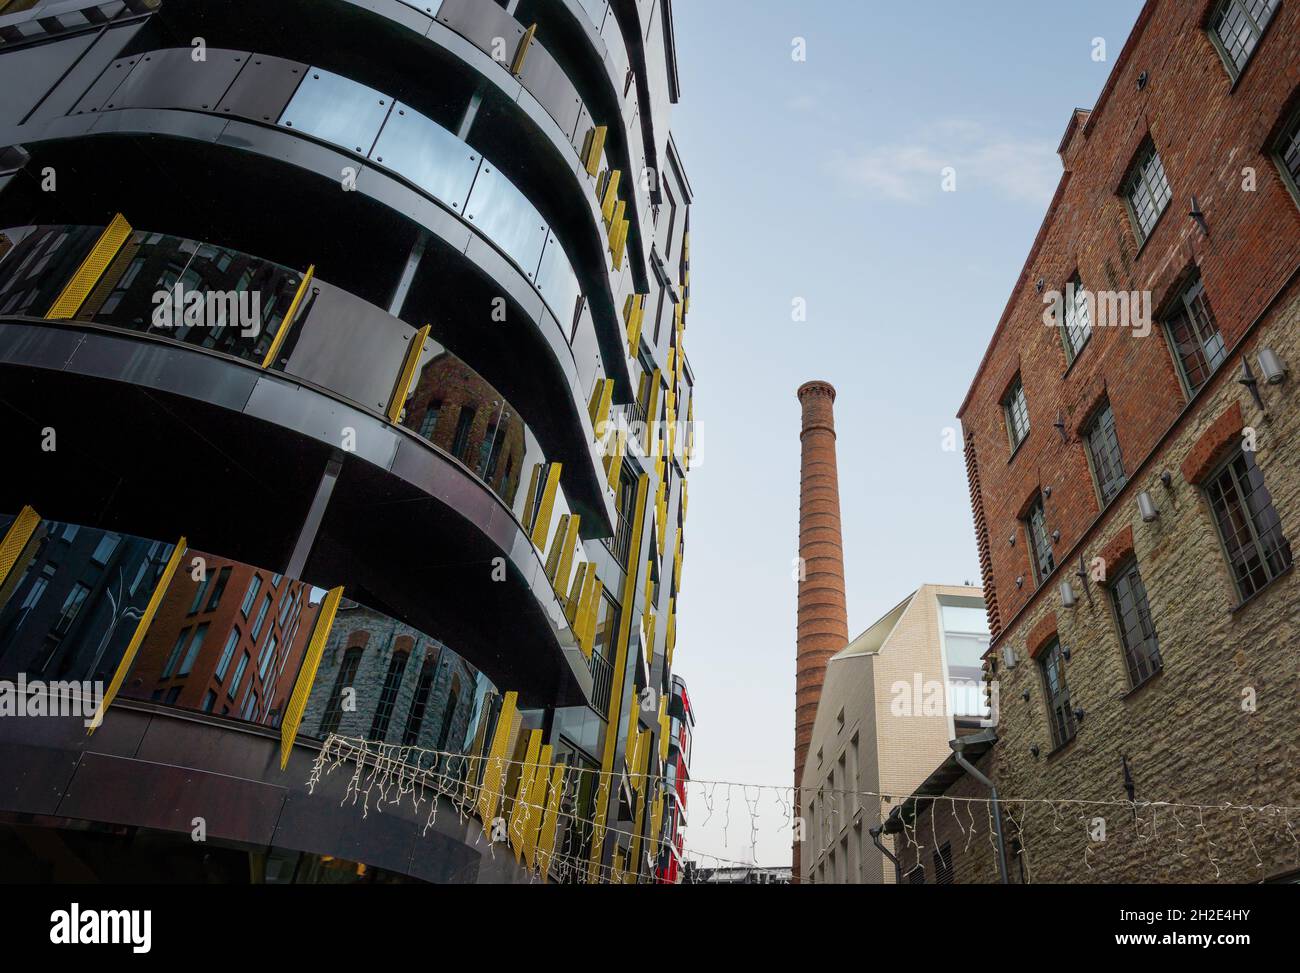 Gemauerter Industriekamin im Quartier Rotermann - ehemaliges Industriegebiet mit moderner Architektur - Tallinn, Estland Stockfoto